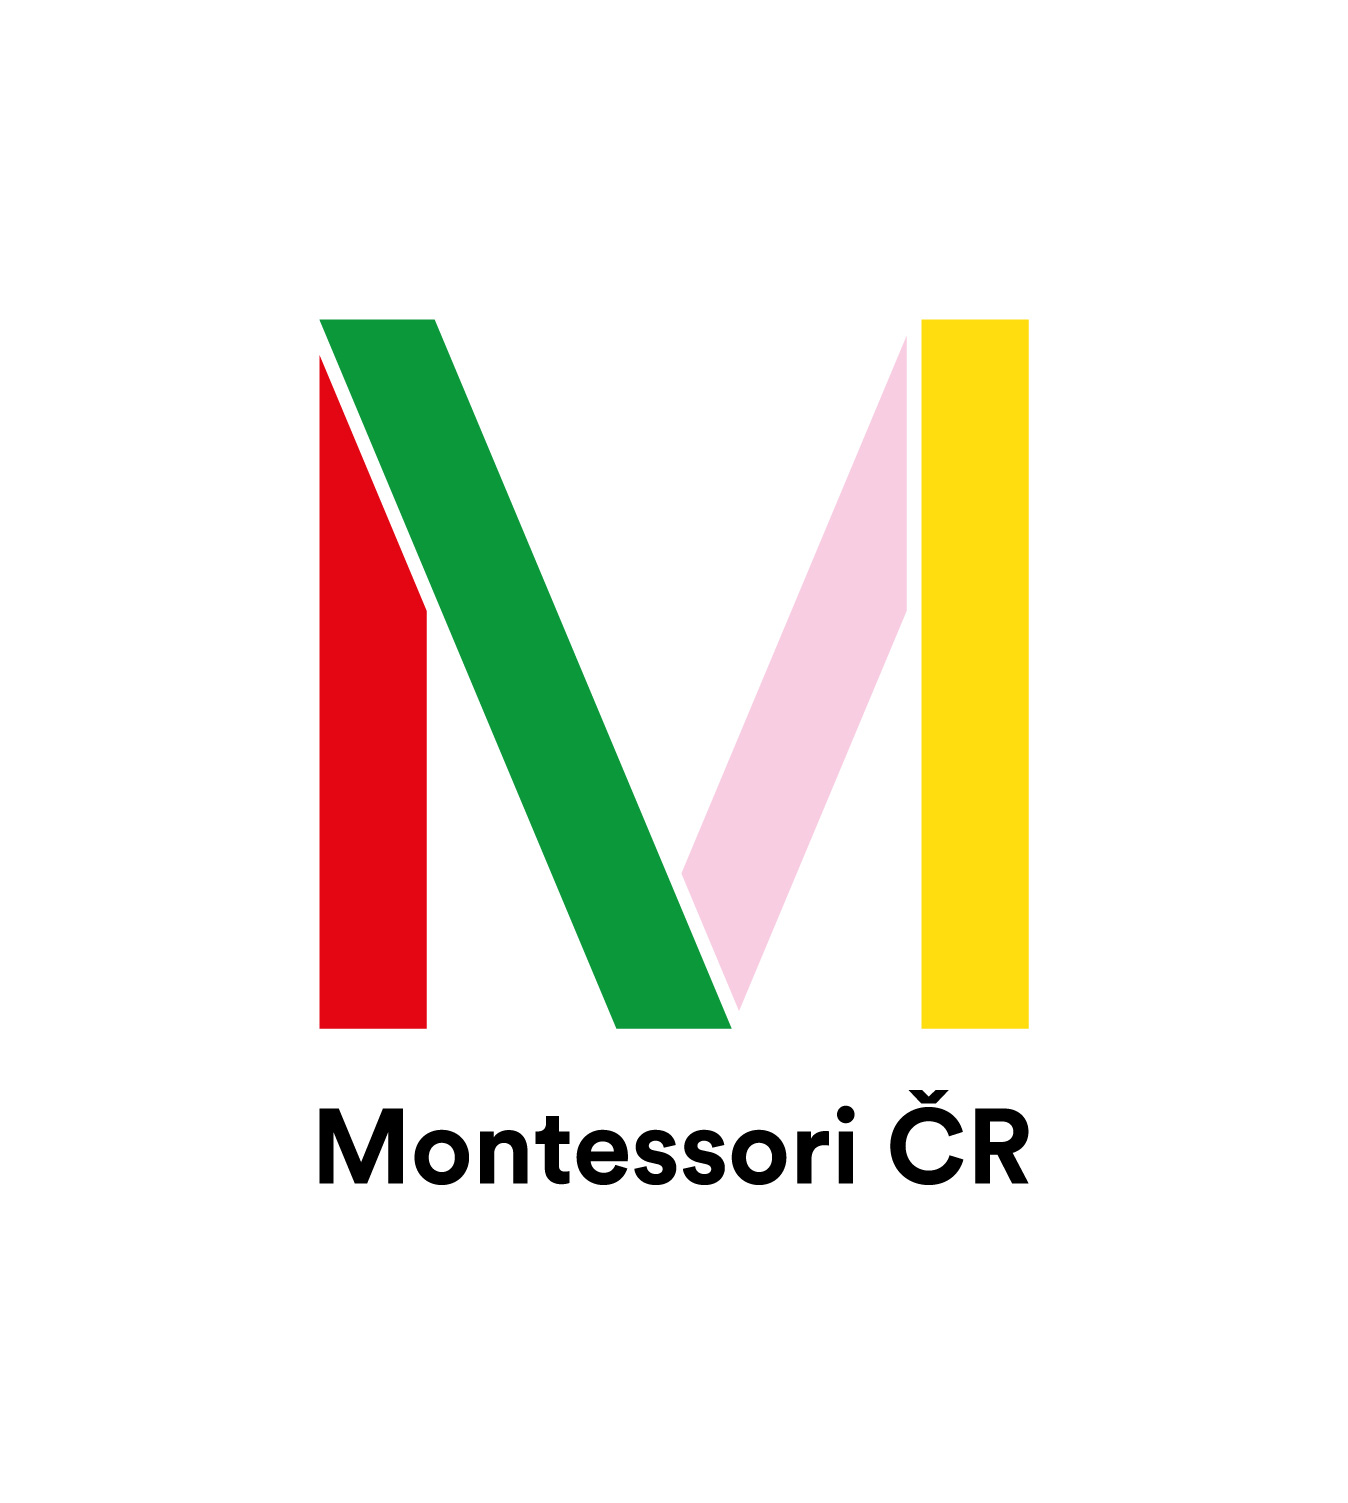 Montessori ČR logo